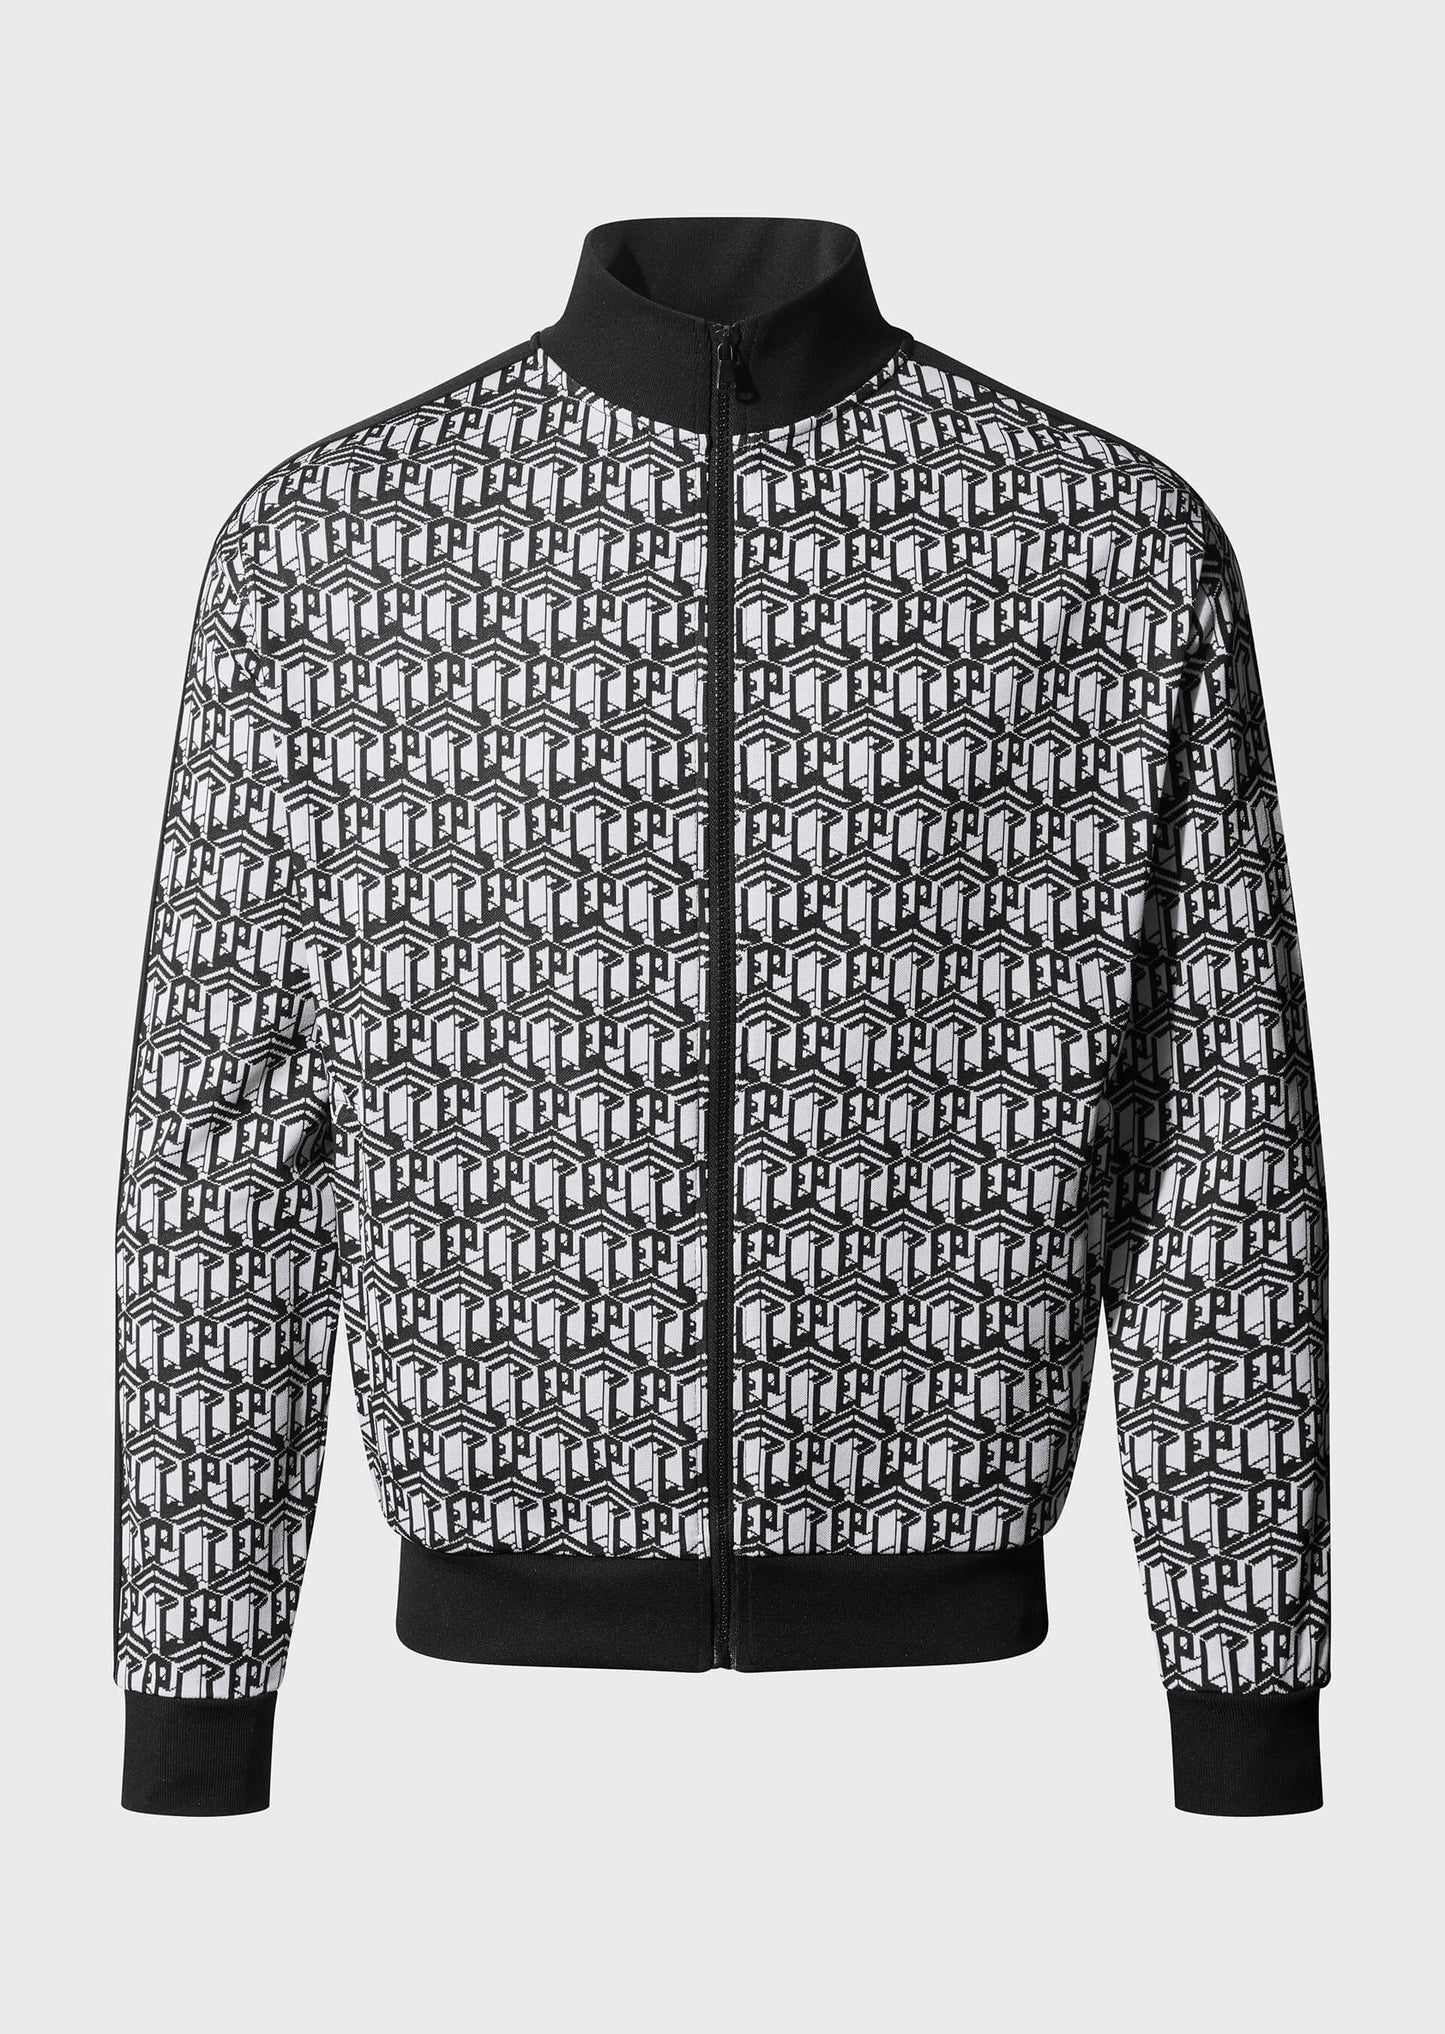 Viob Printed Zip-Up Sweatshirt